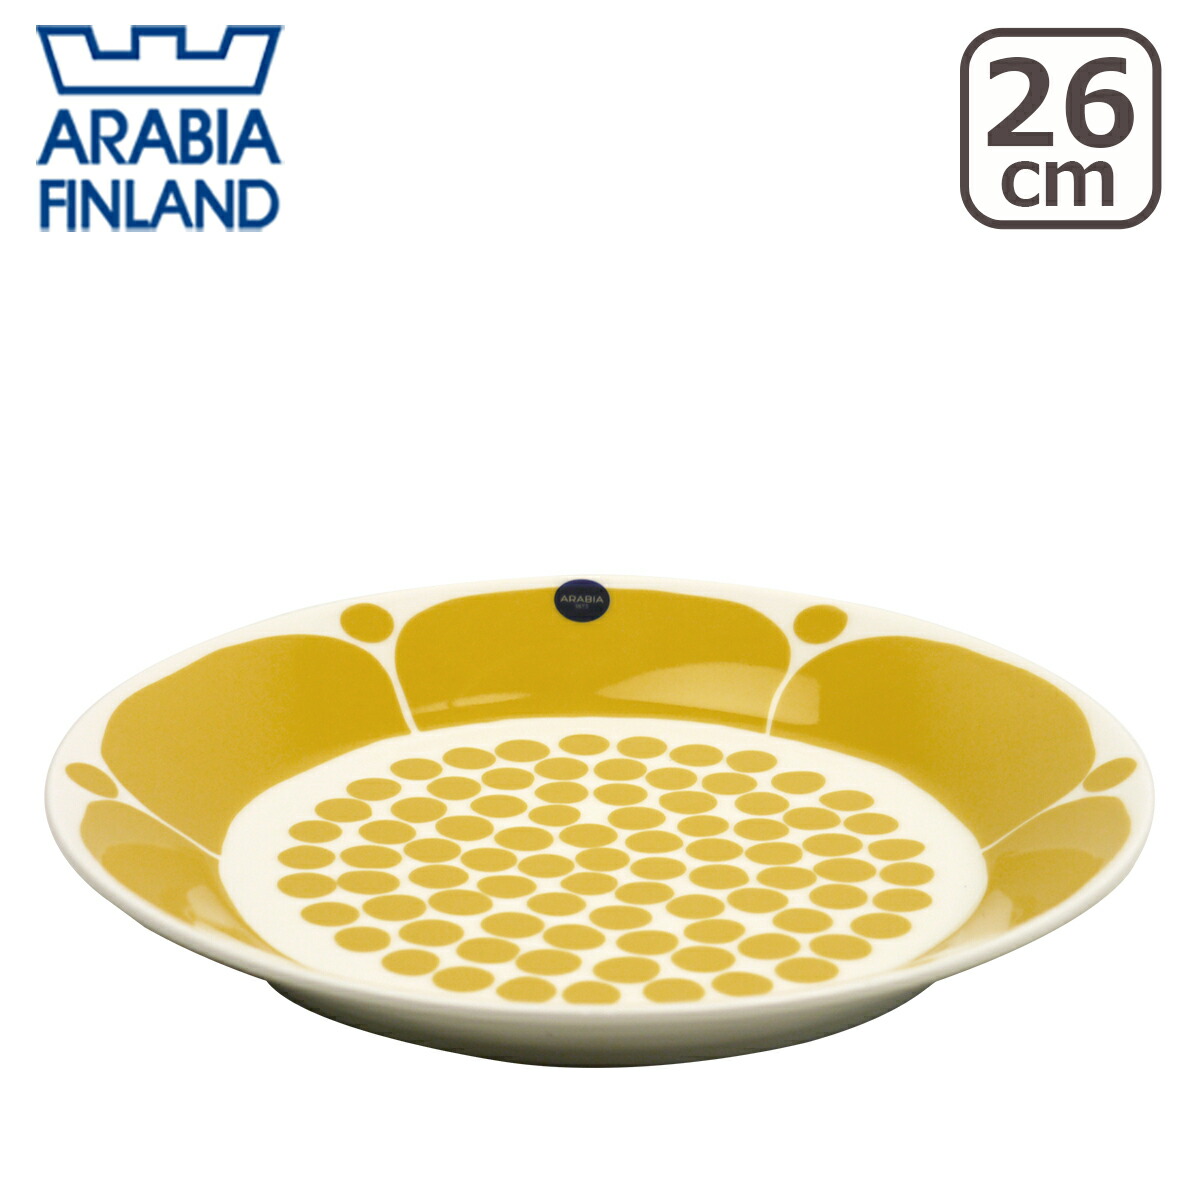 アラビア スンヌンタイ プレート 26cm Arabia Sunnuntai 食器 皿